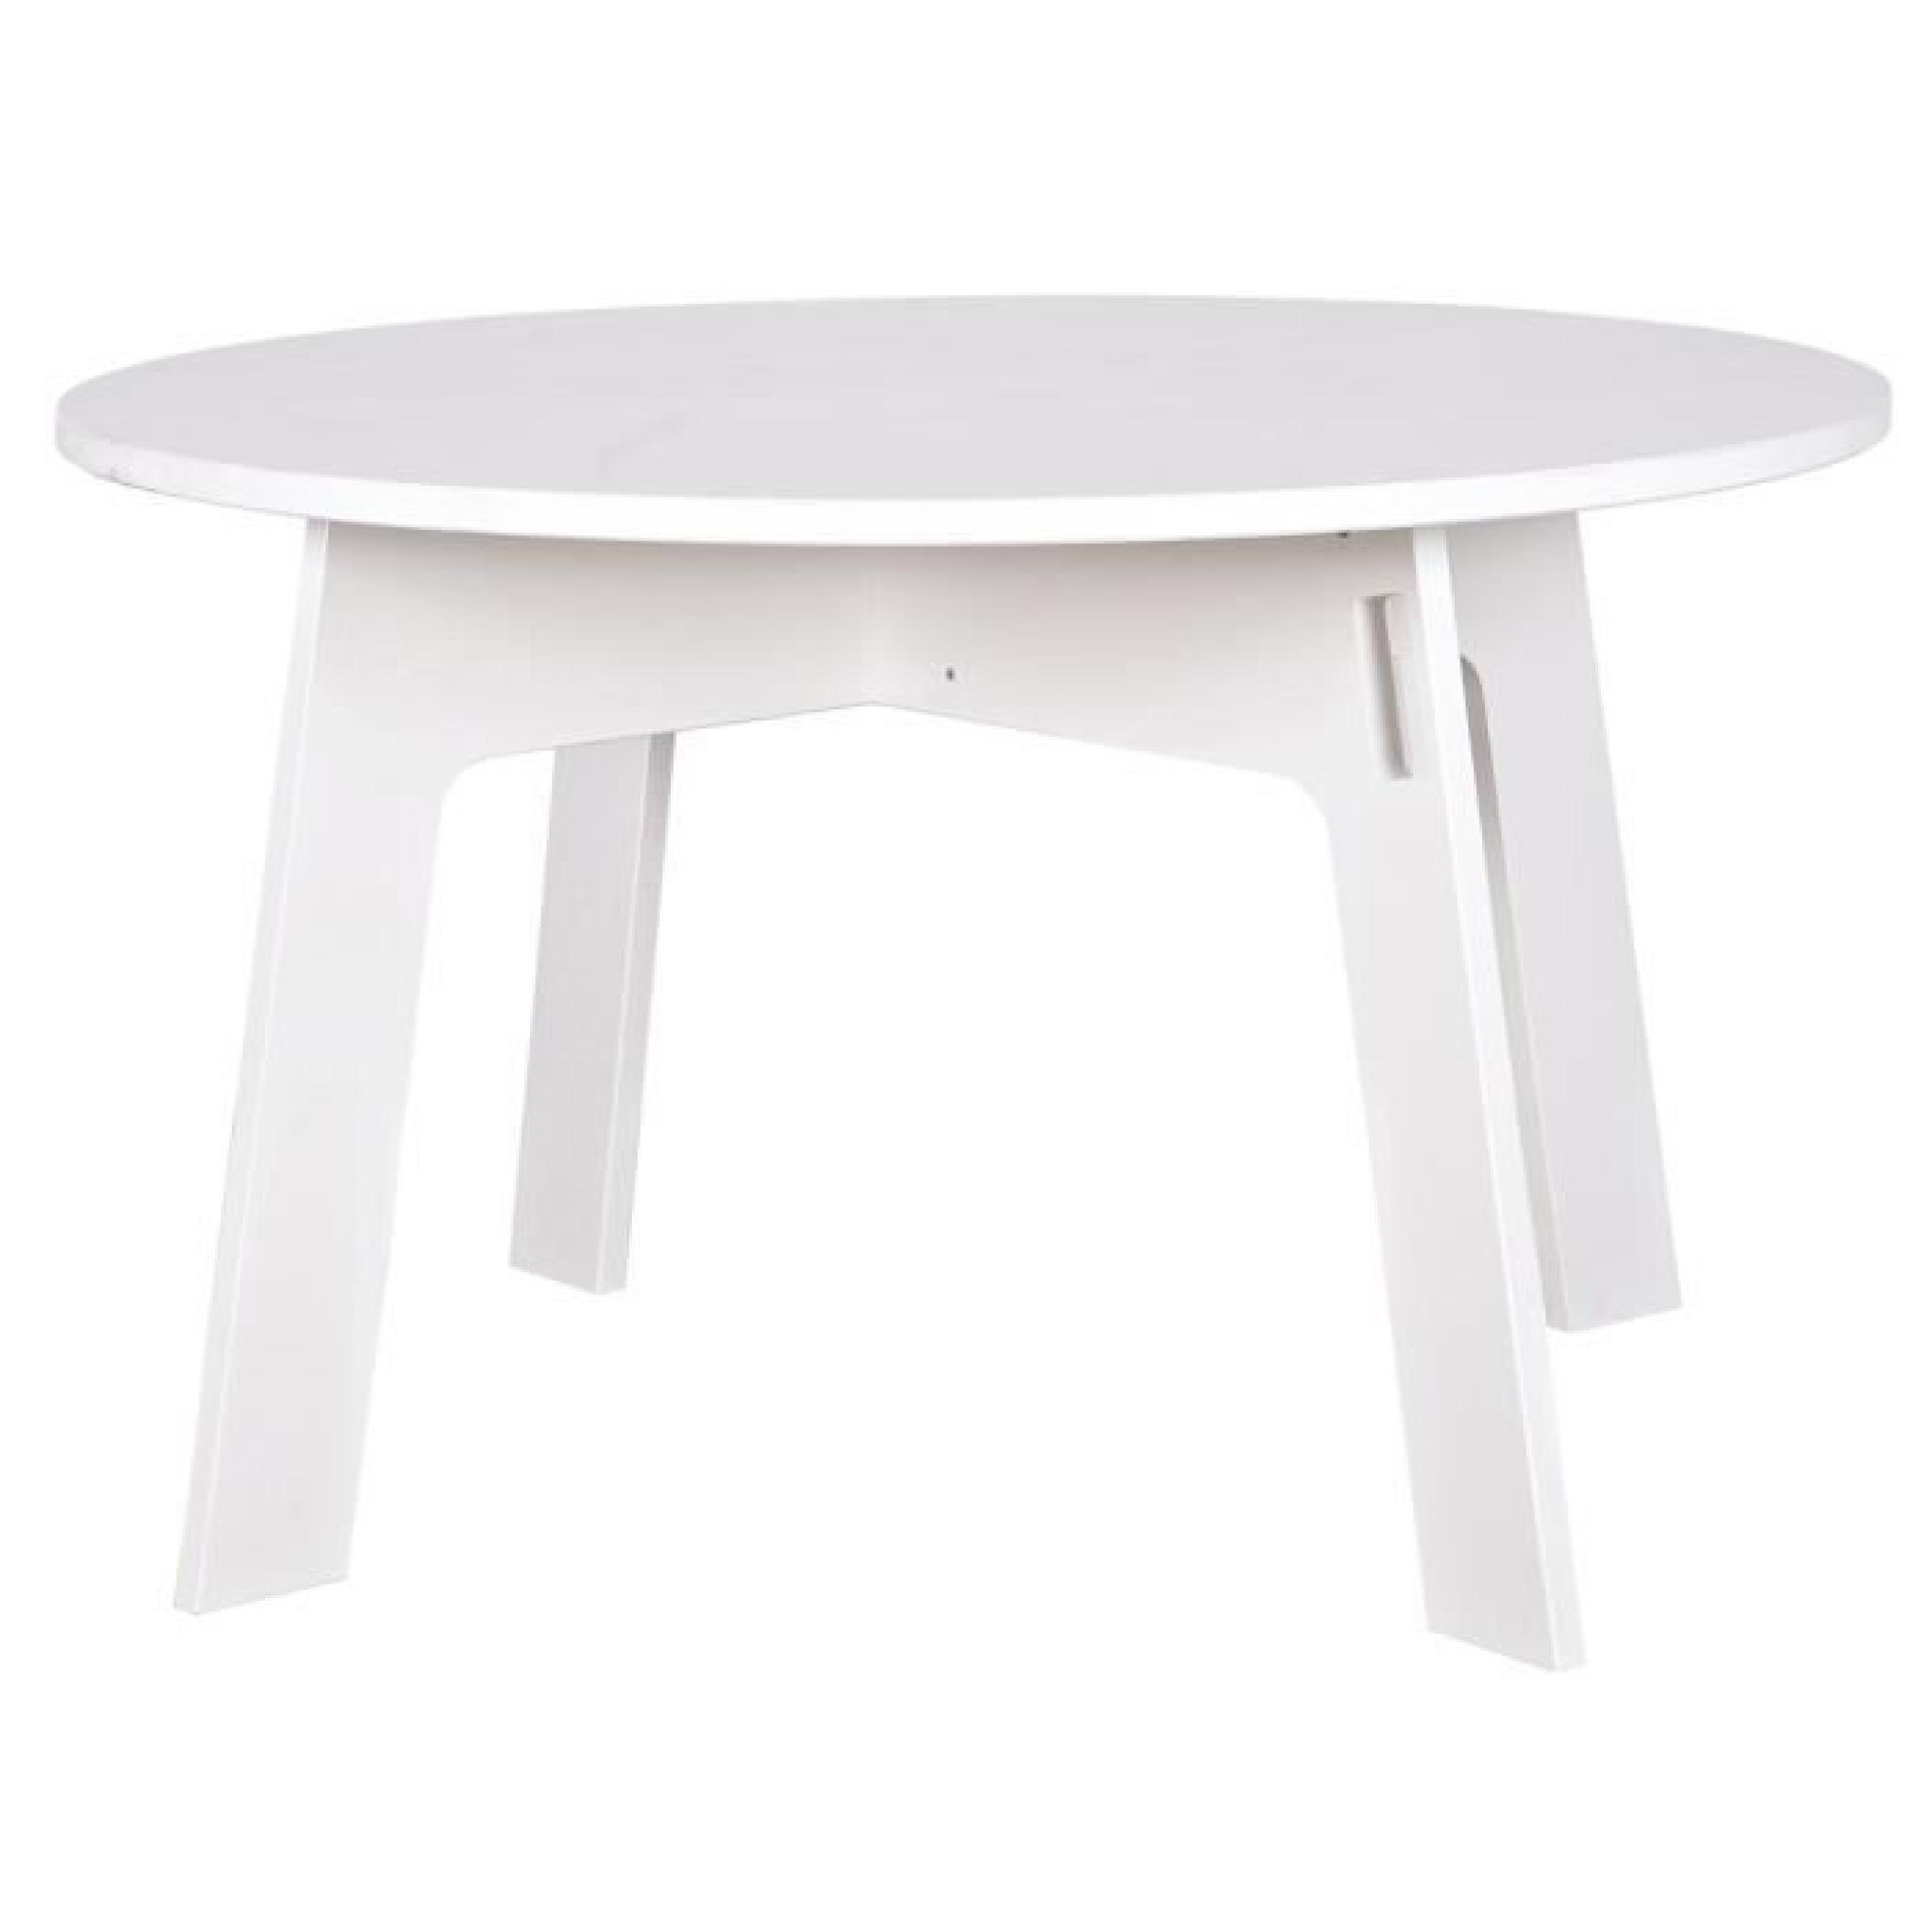 Table à manger ronde blanche, H 77 x D 129 cm